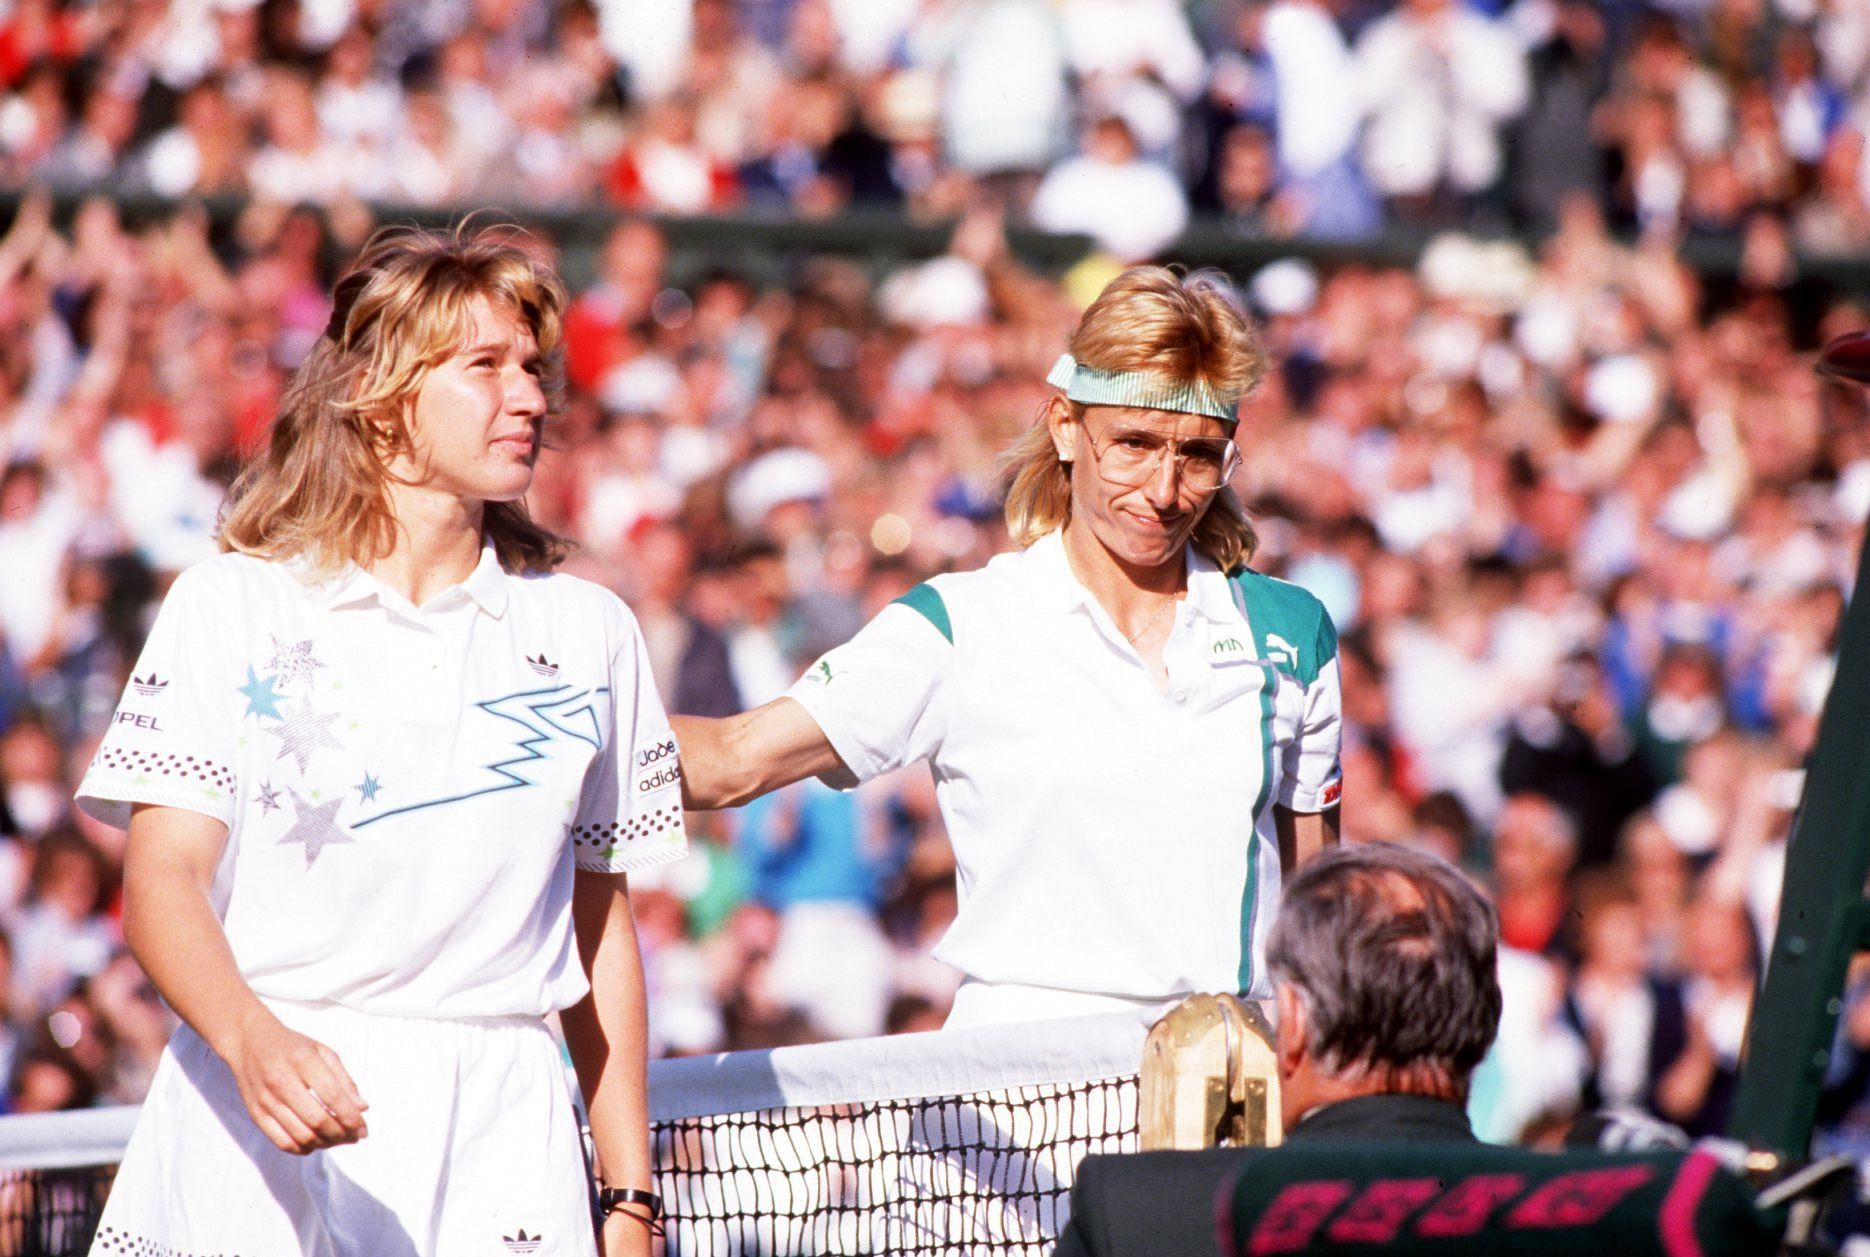 Steffi Graf and Martina Navratilova at the 1988 Wimbledon Championships